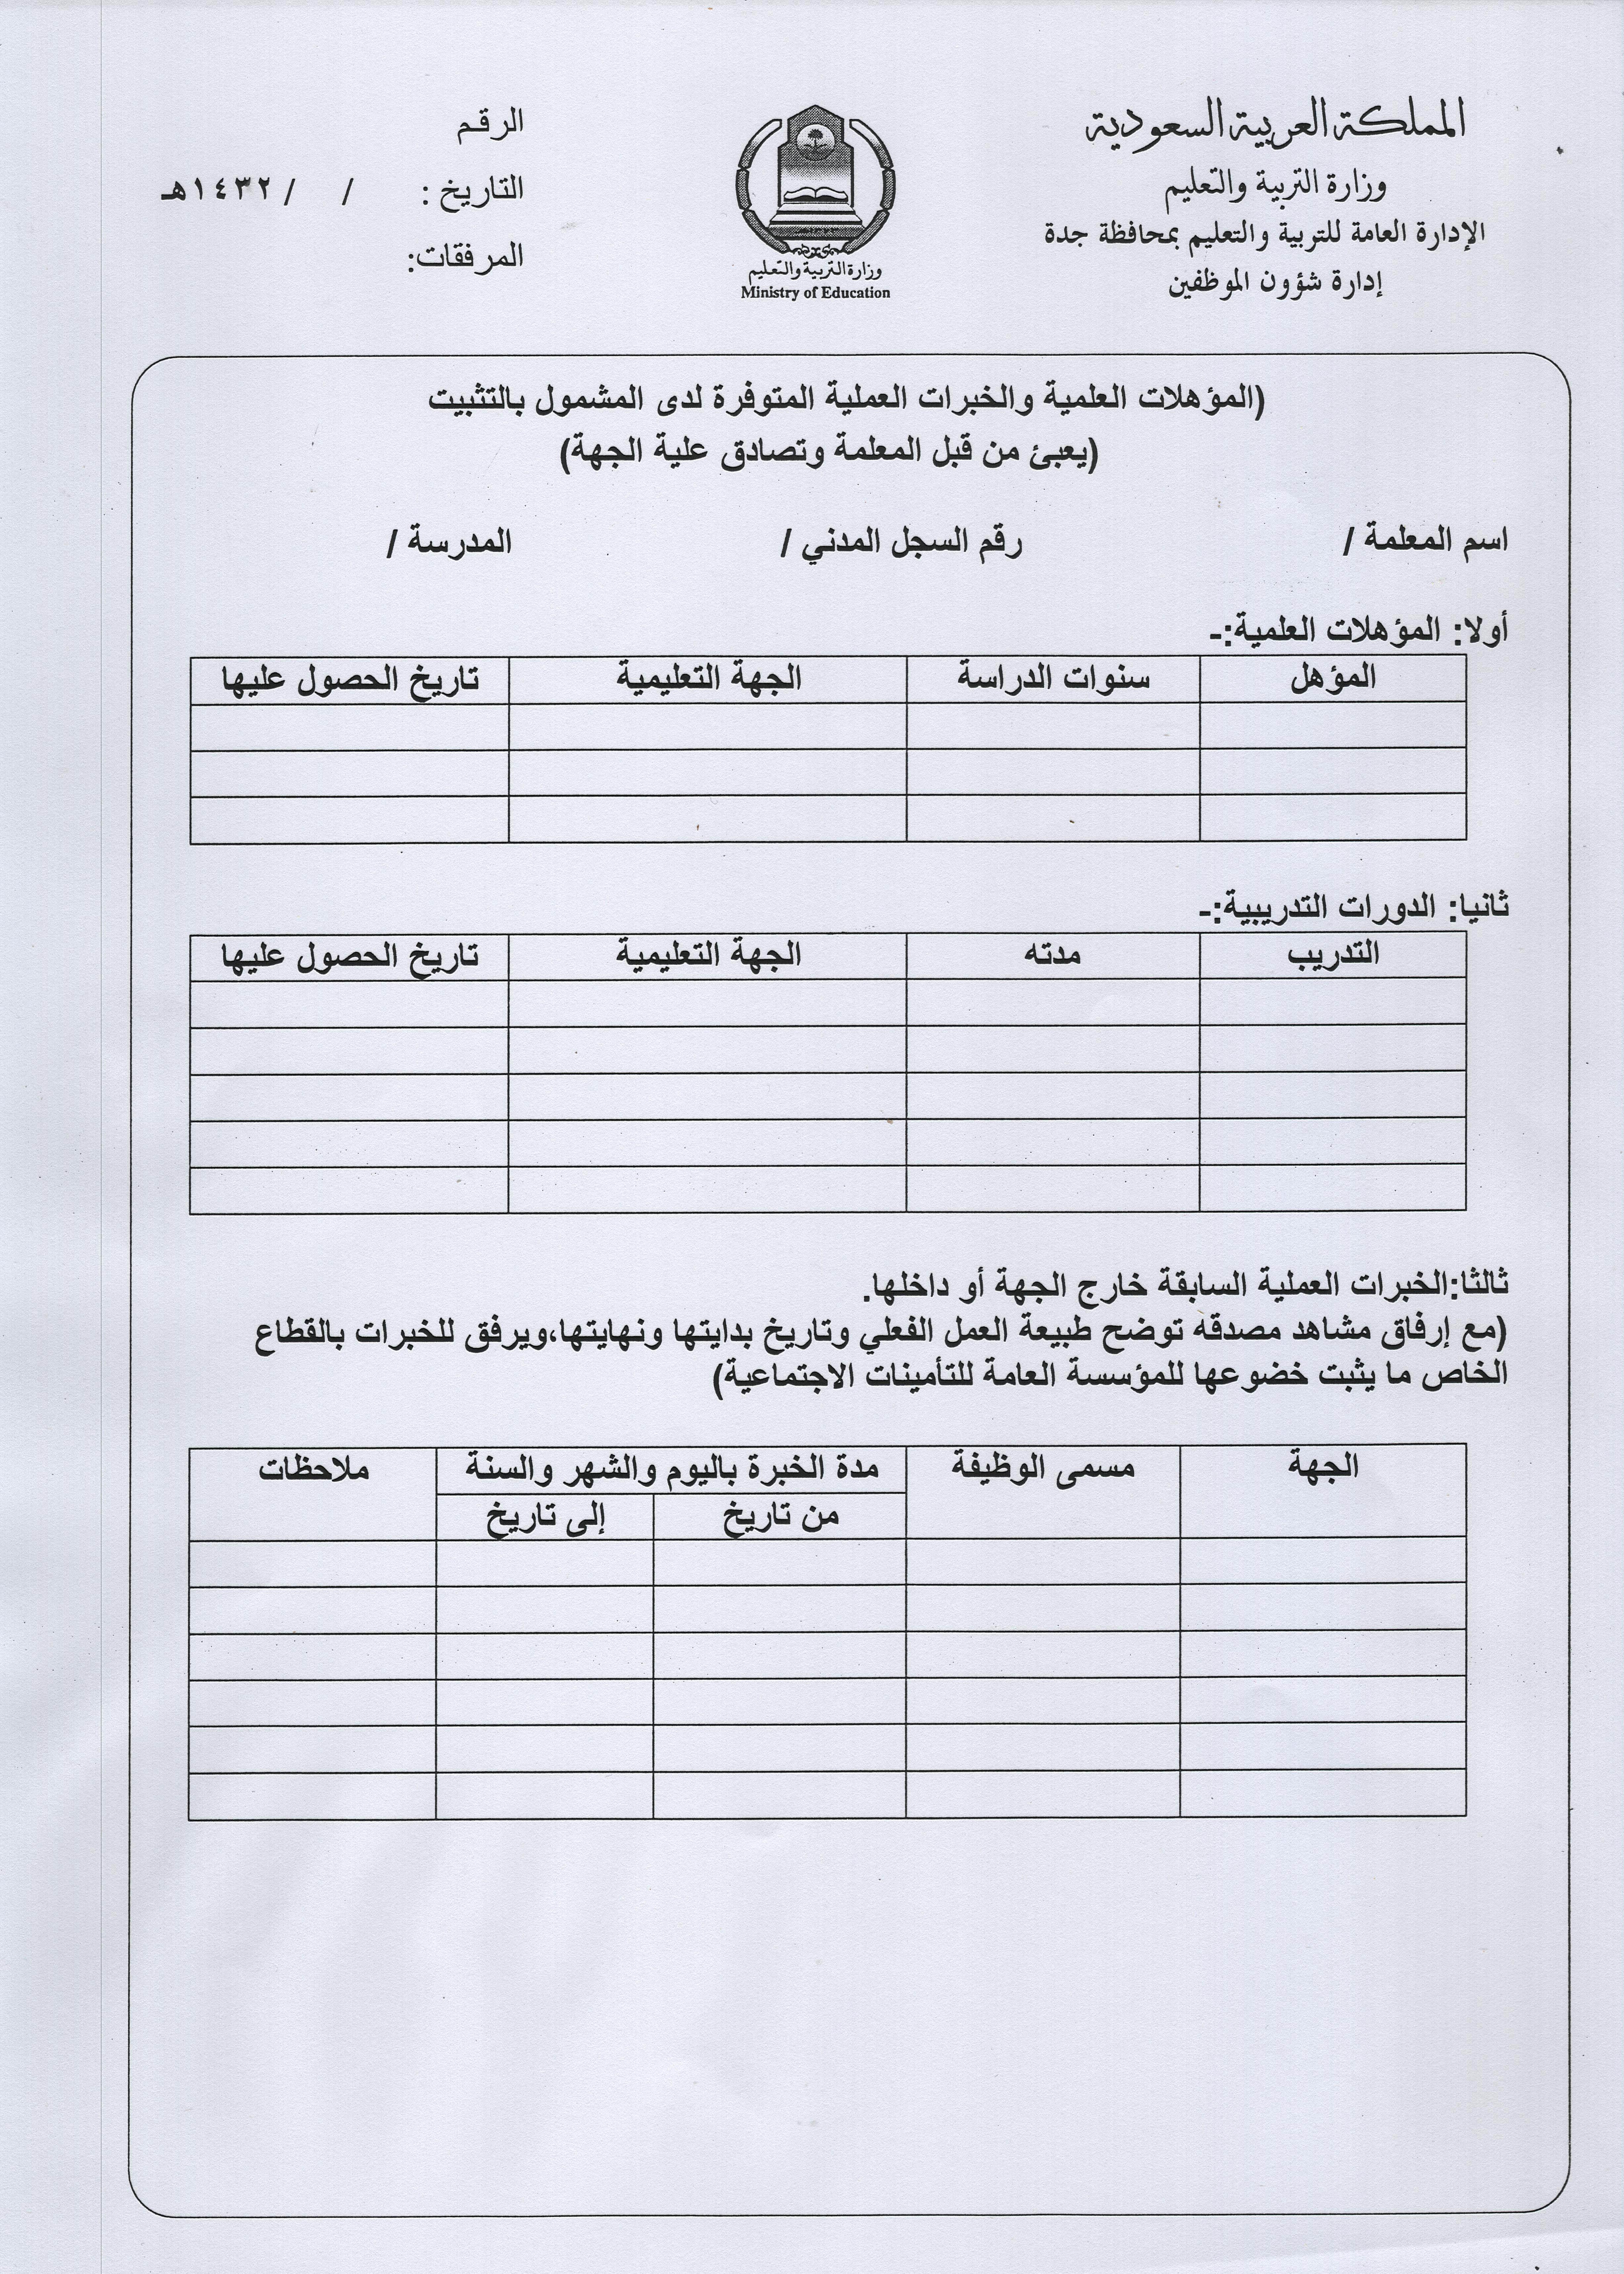 صورة من التعميم الصادر بخصوص ضوابط تثبيت المعلمات البديلات قرية حزنه